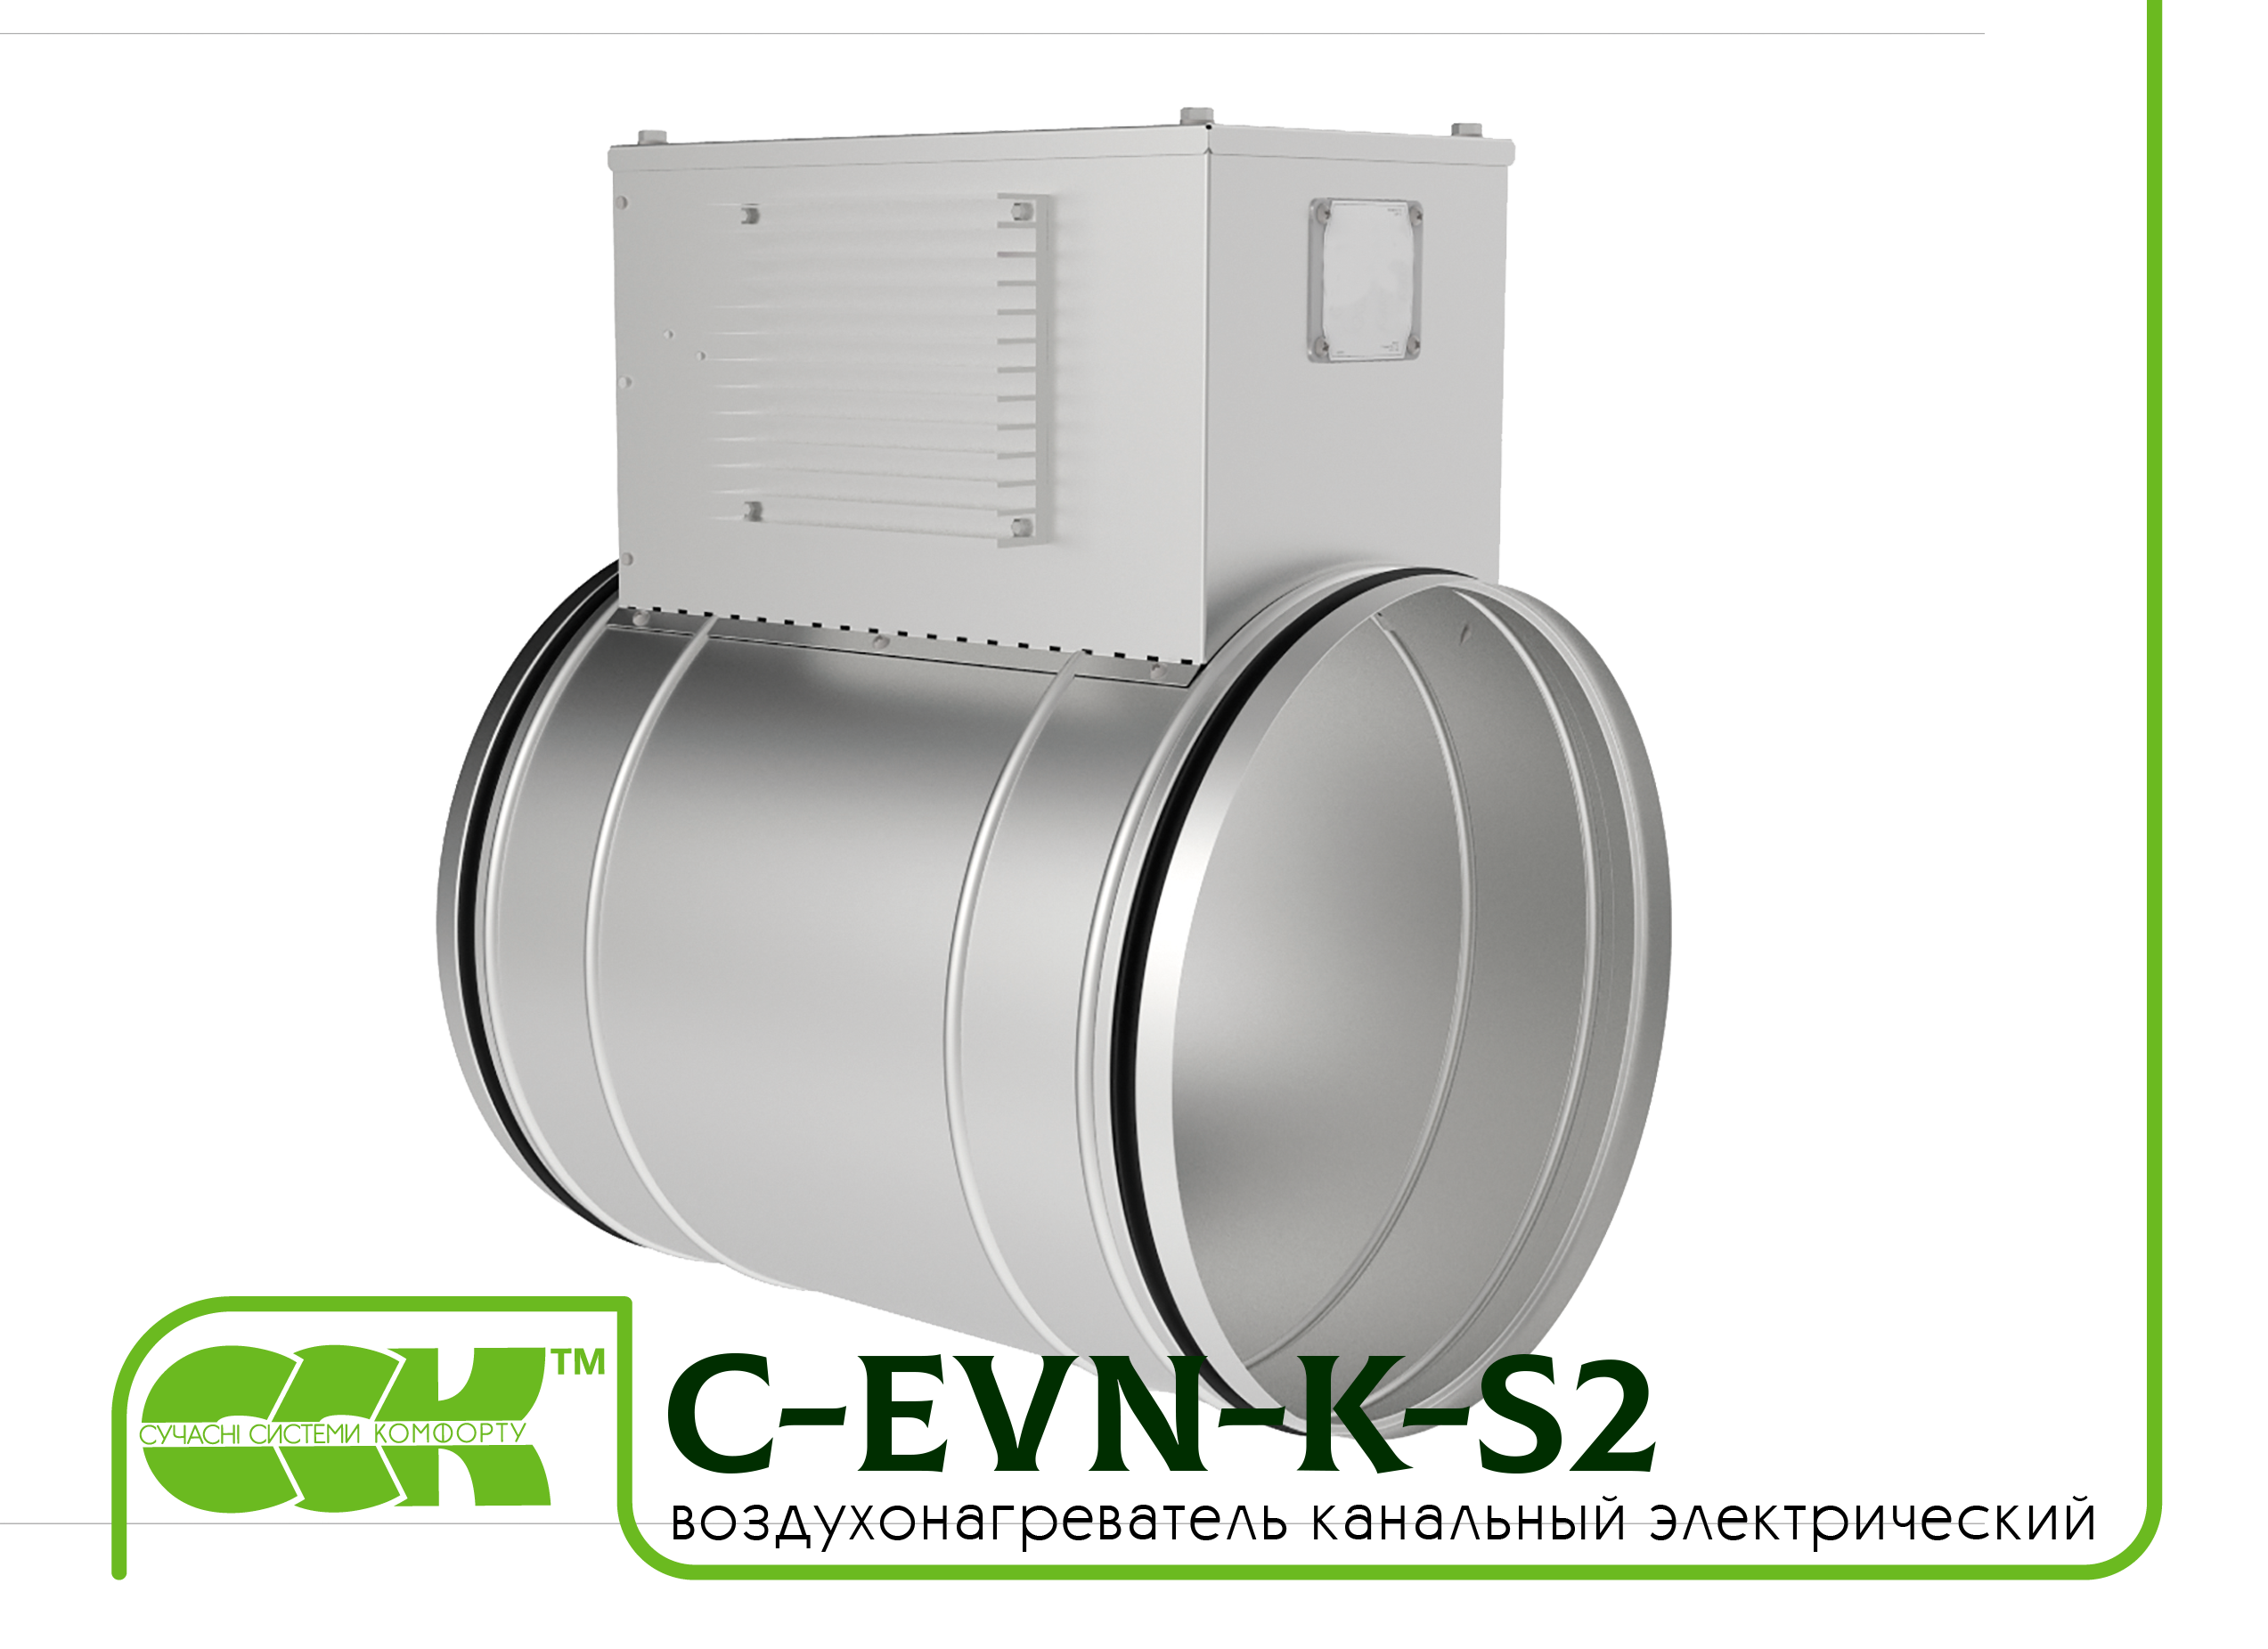 Воздухонагреватель канальный электрический для круглых каналов C-EVN-K-S2-150-1,5